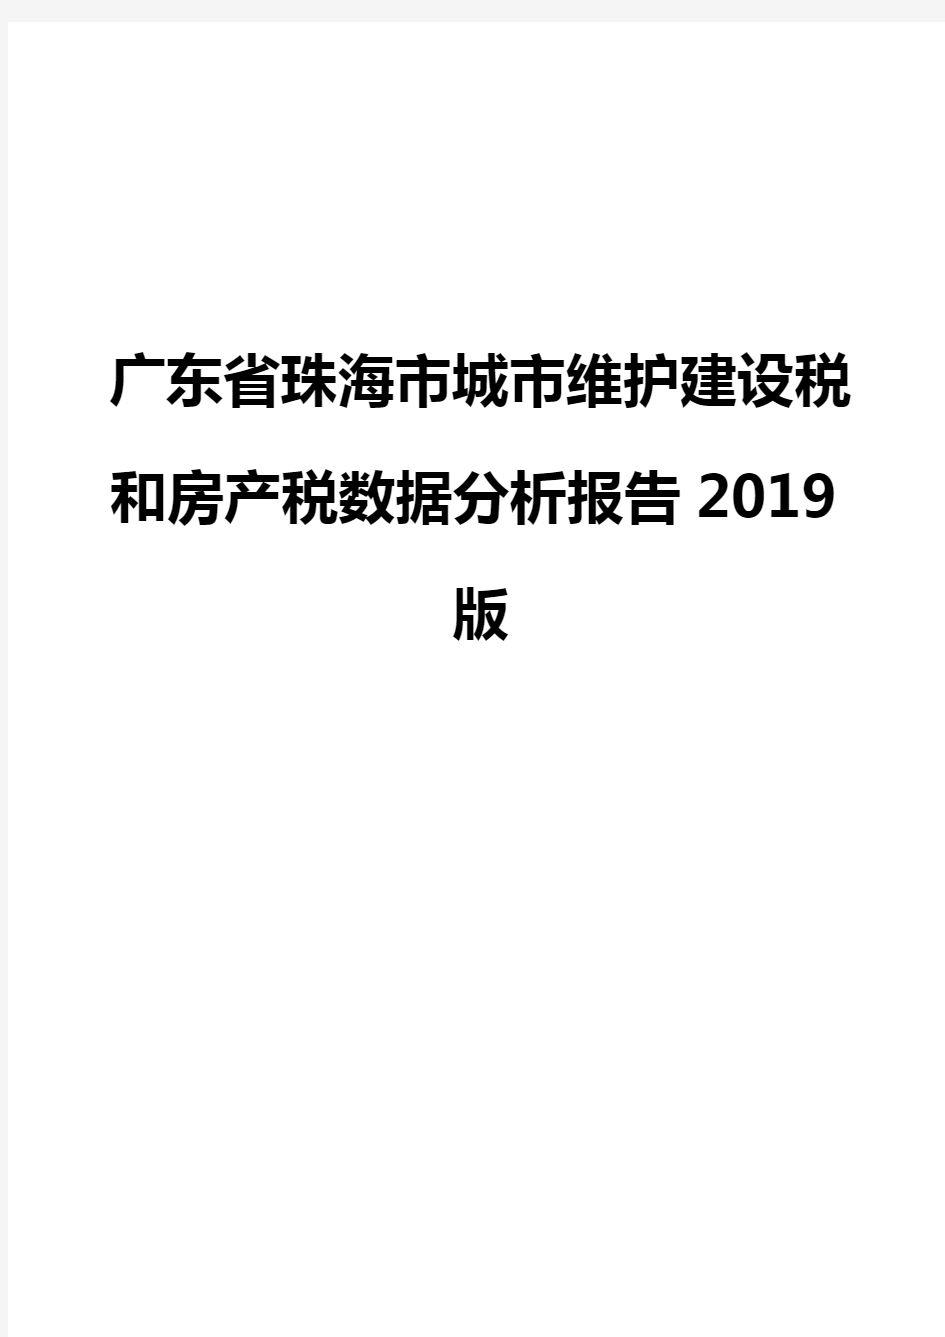 广东省珠海市城市维护建设税和房产税数据分析报告2019版